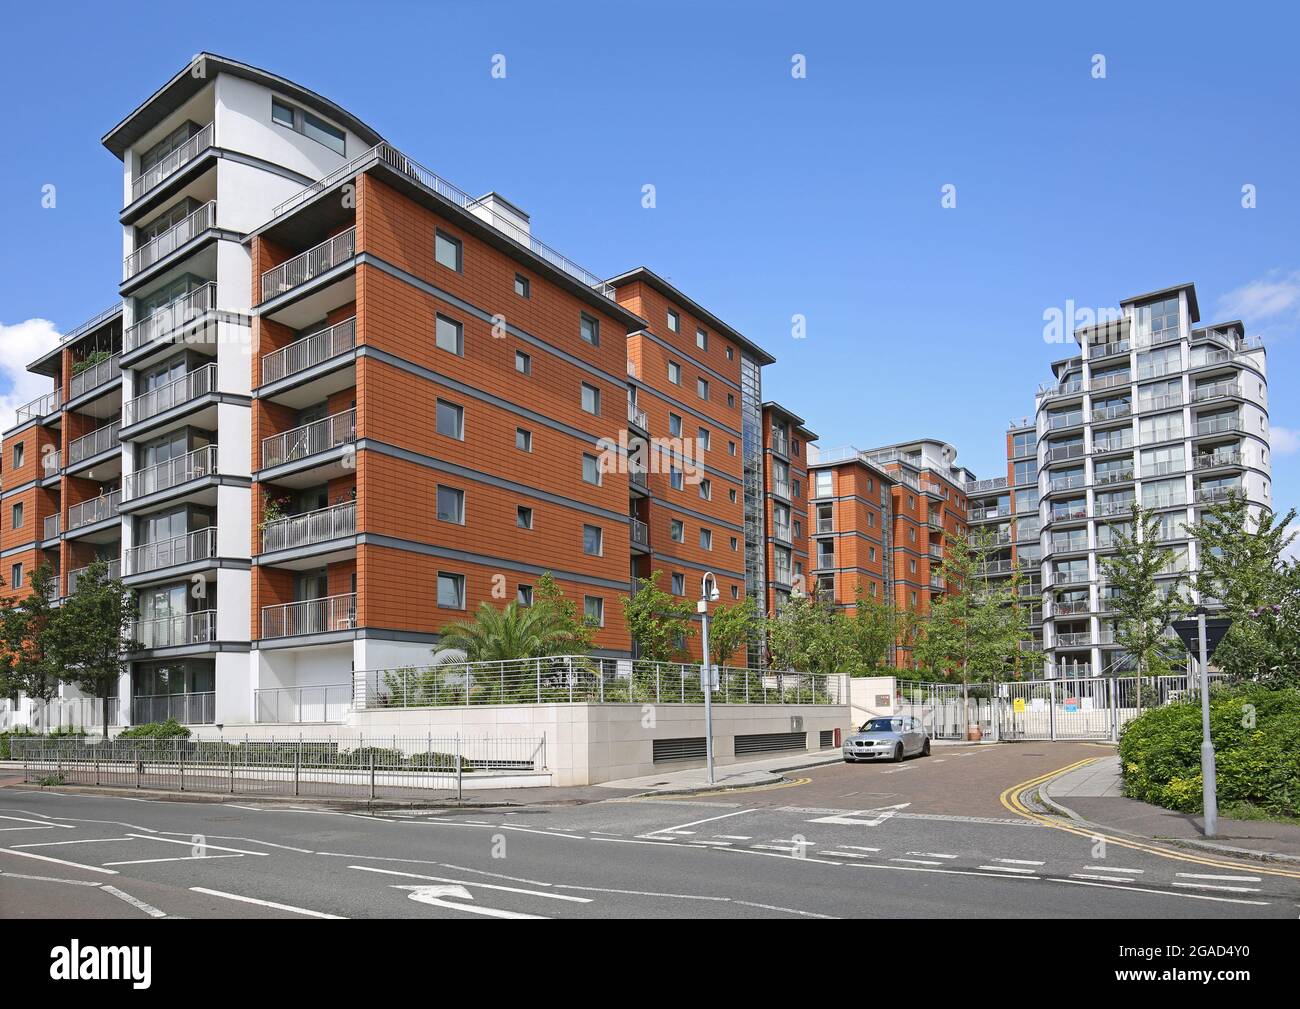 Nuovo sviluppo delle credenziali su Kew Bridge Road, Brentford, West London. Gli appartamenti si affacciano sul Tamigi. Angolo di Holland Gardens. Foto Stock